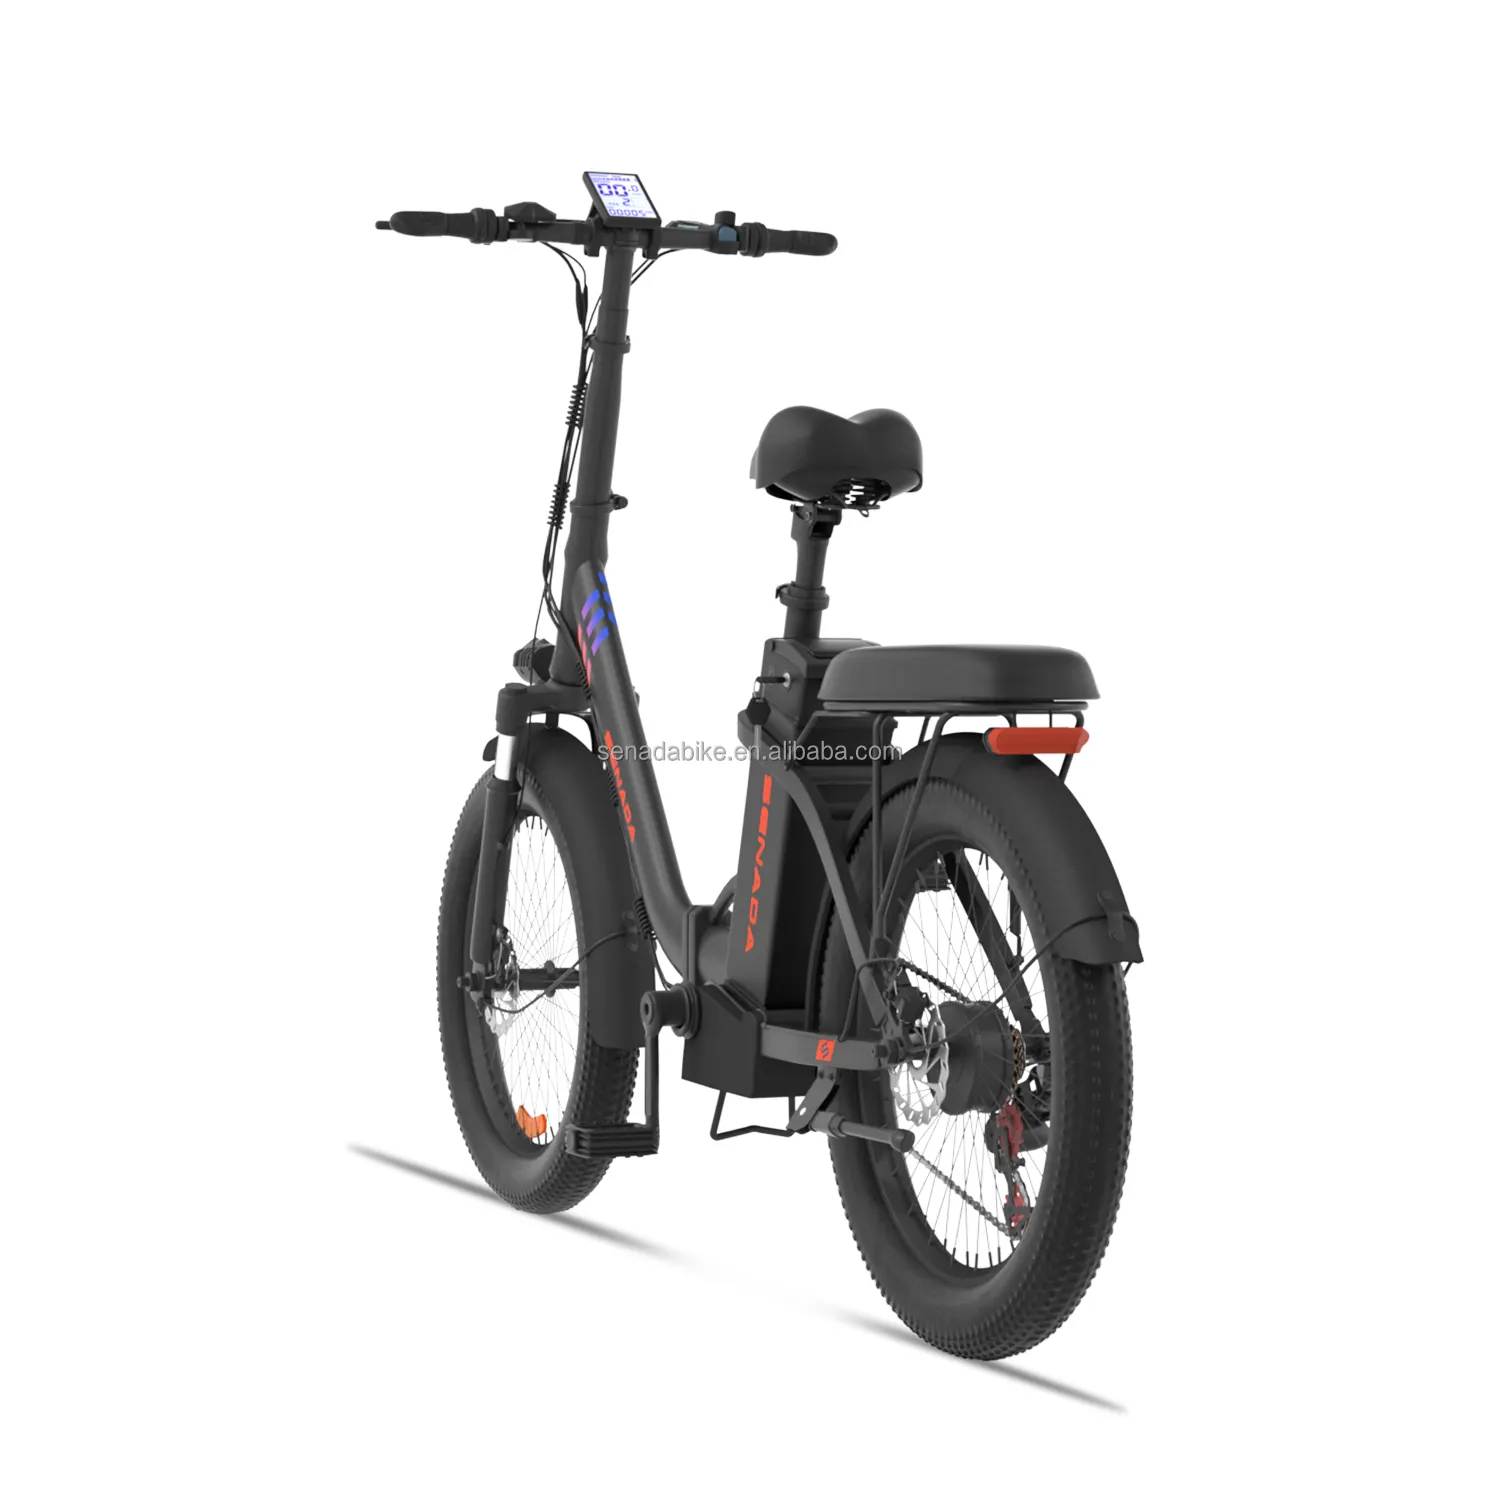 دراجة جبلية كهربائية للبالغين مقاس 26 بوصة وقوة 3000 واط من موقع علي بابا